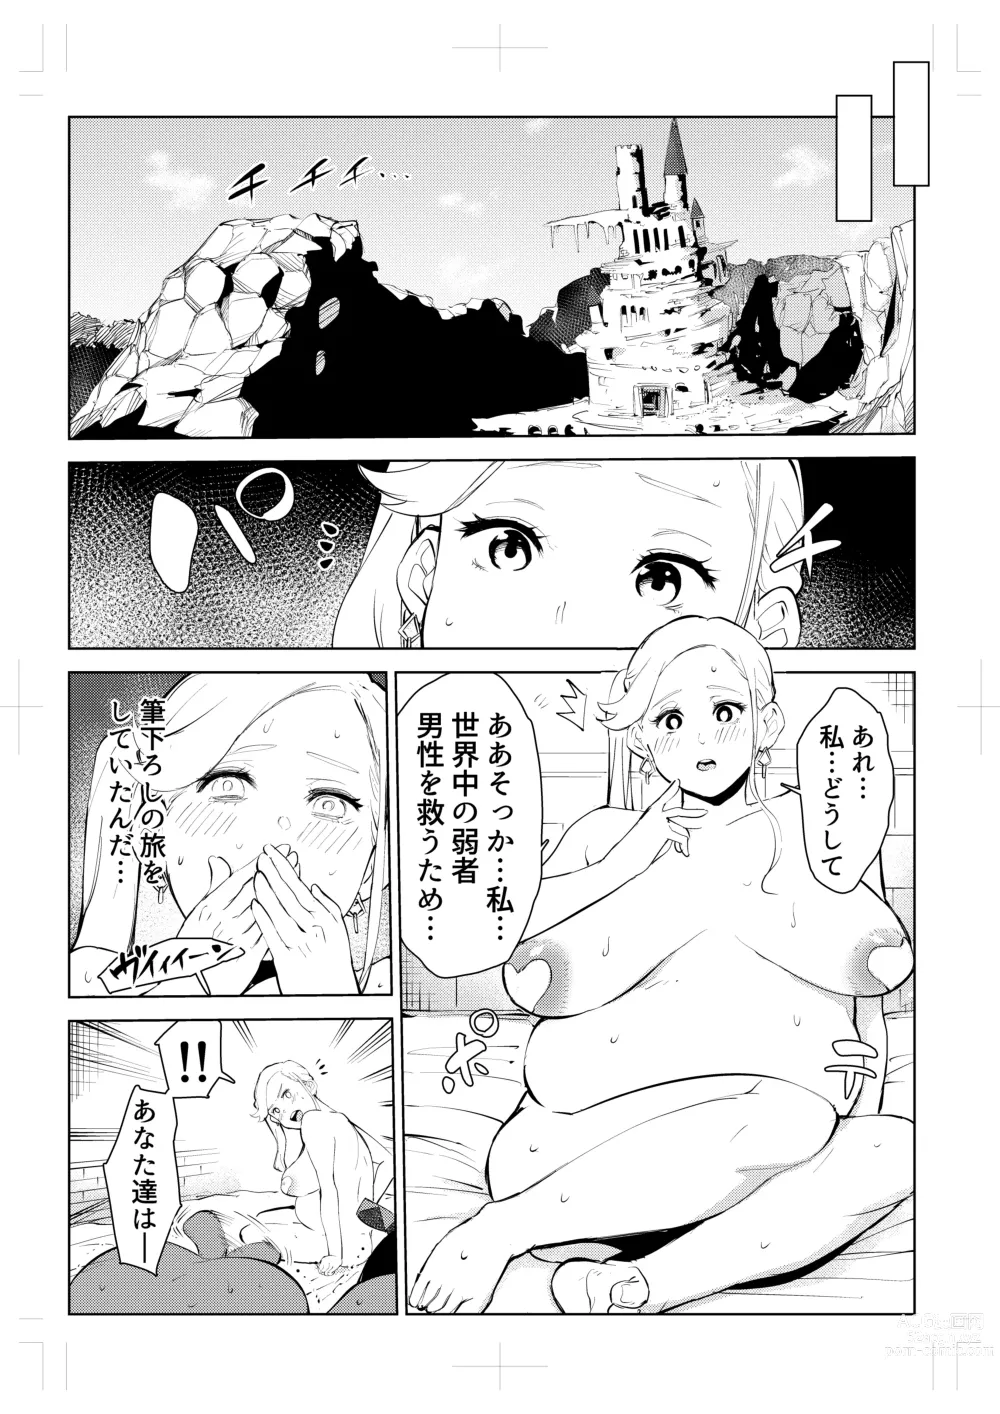 Page 108 of doujinshi 40-sai no Mahoutukai  0